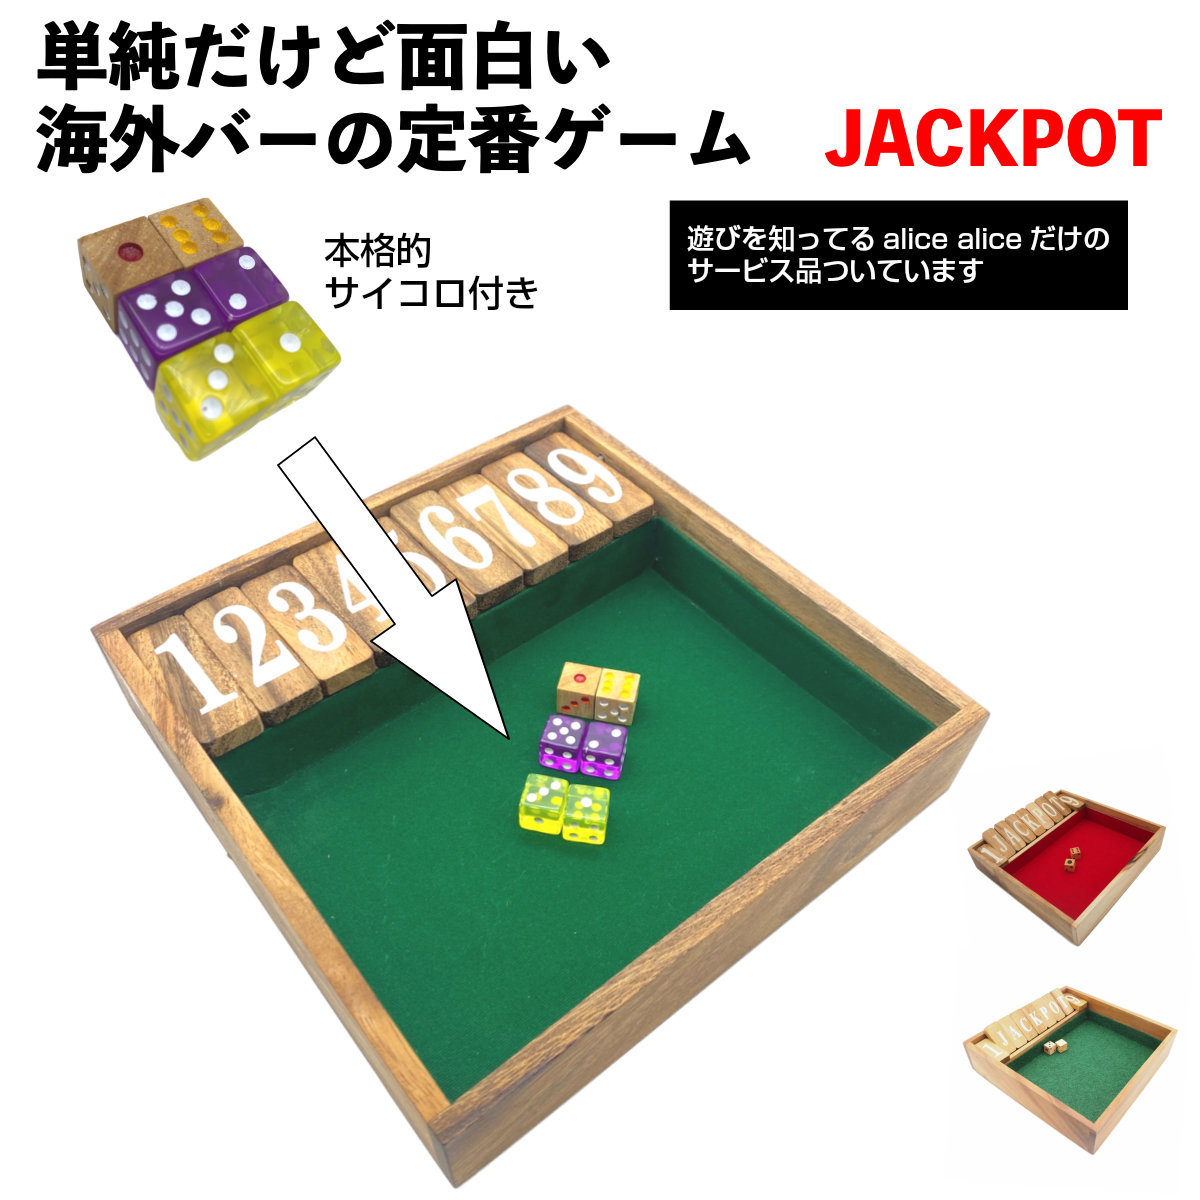 楽天市場 送料無料 海外バービアで定番サイコロゲーム Jackpot